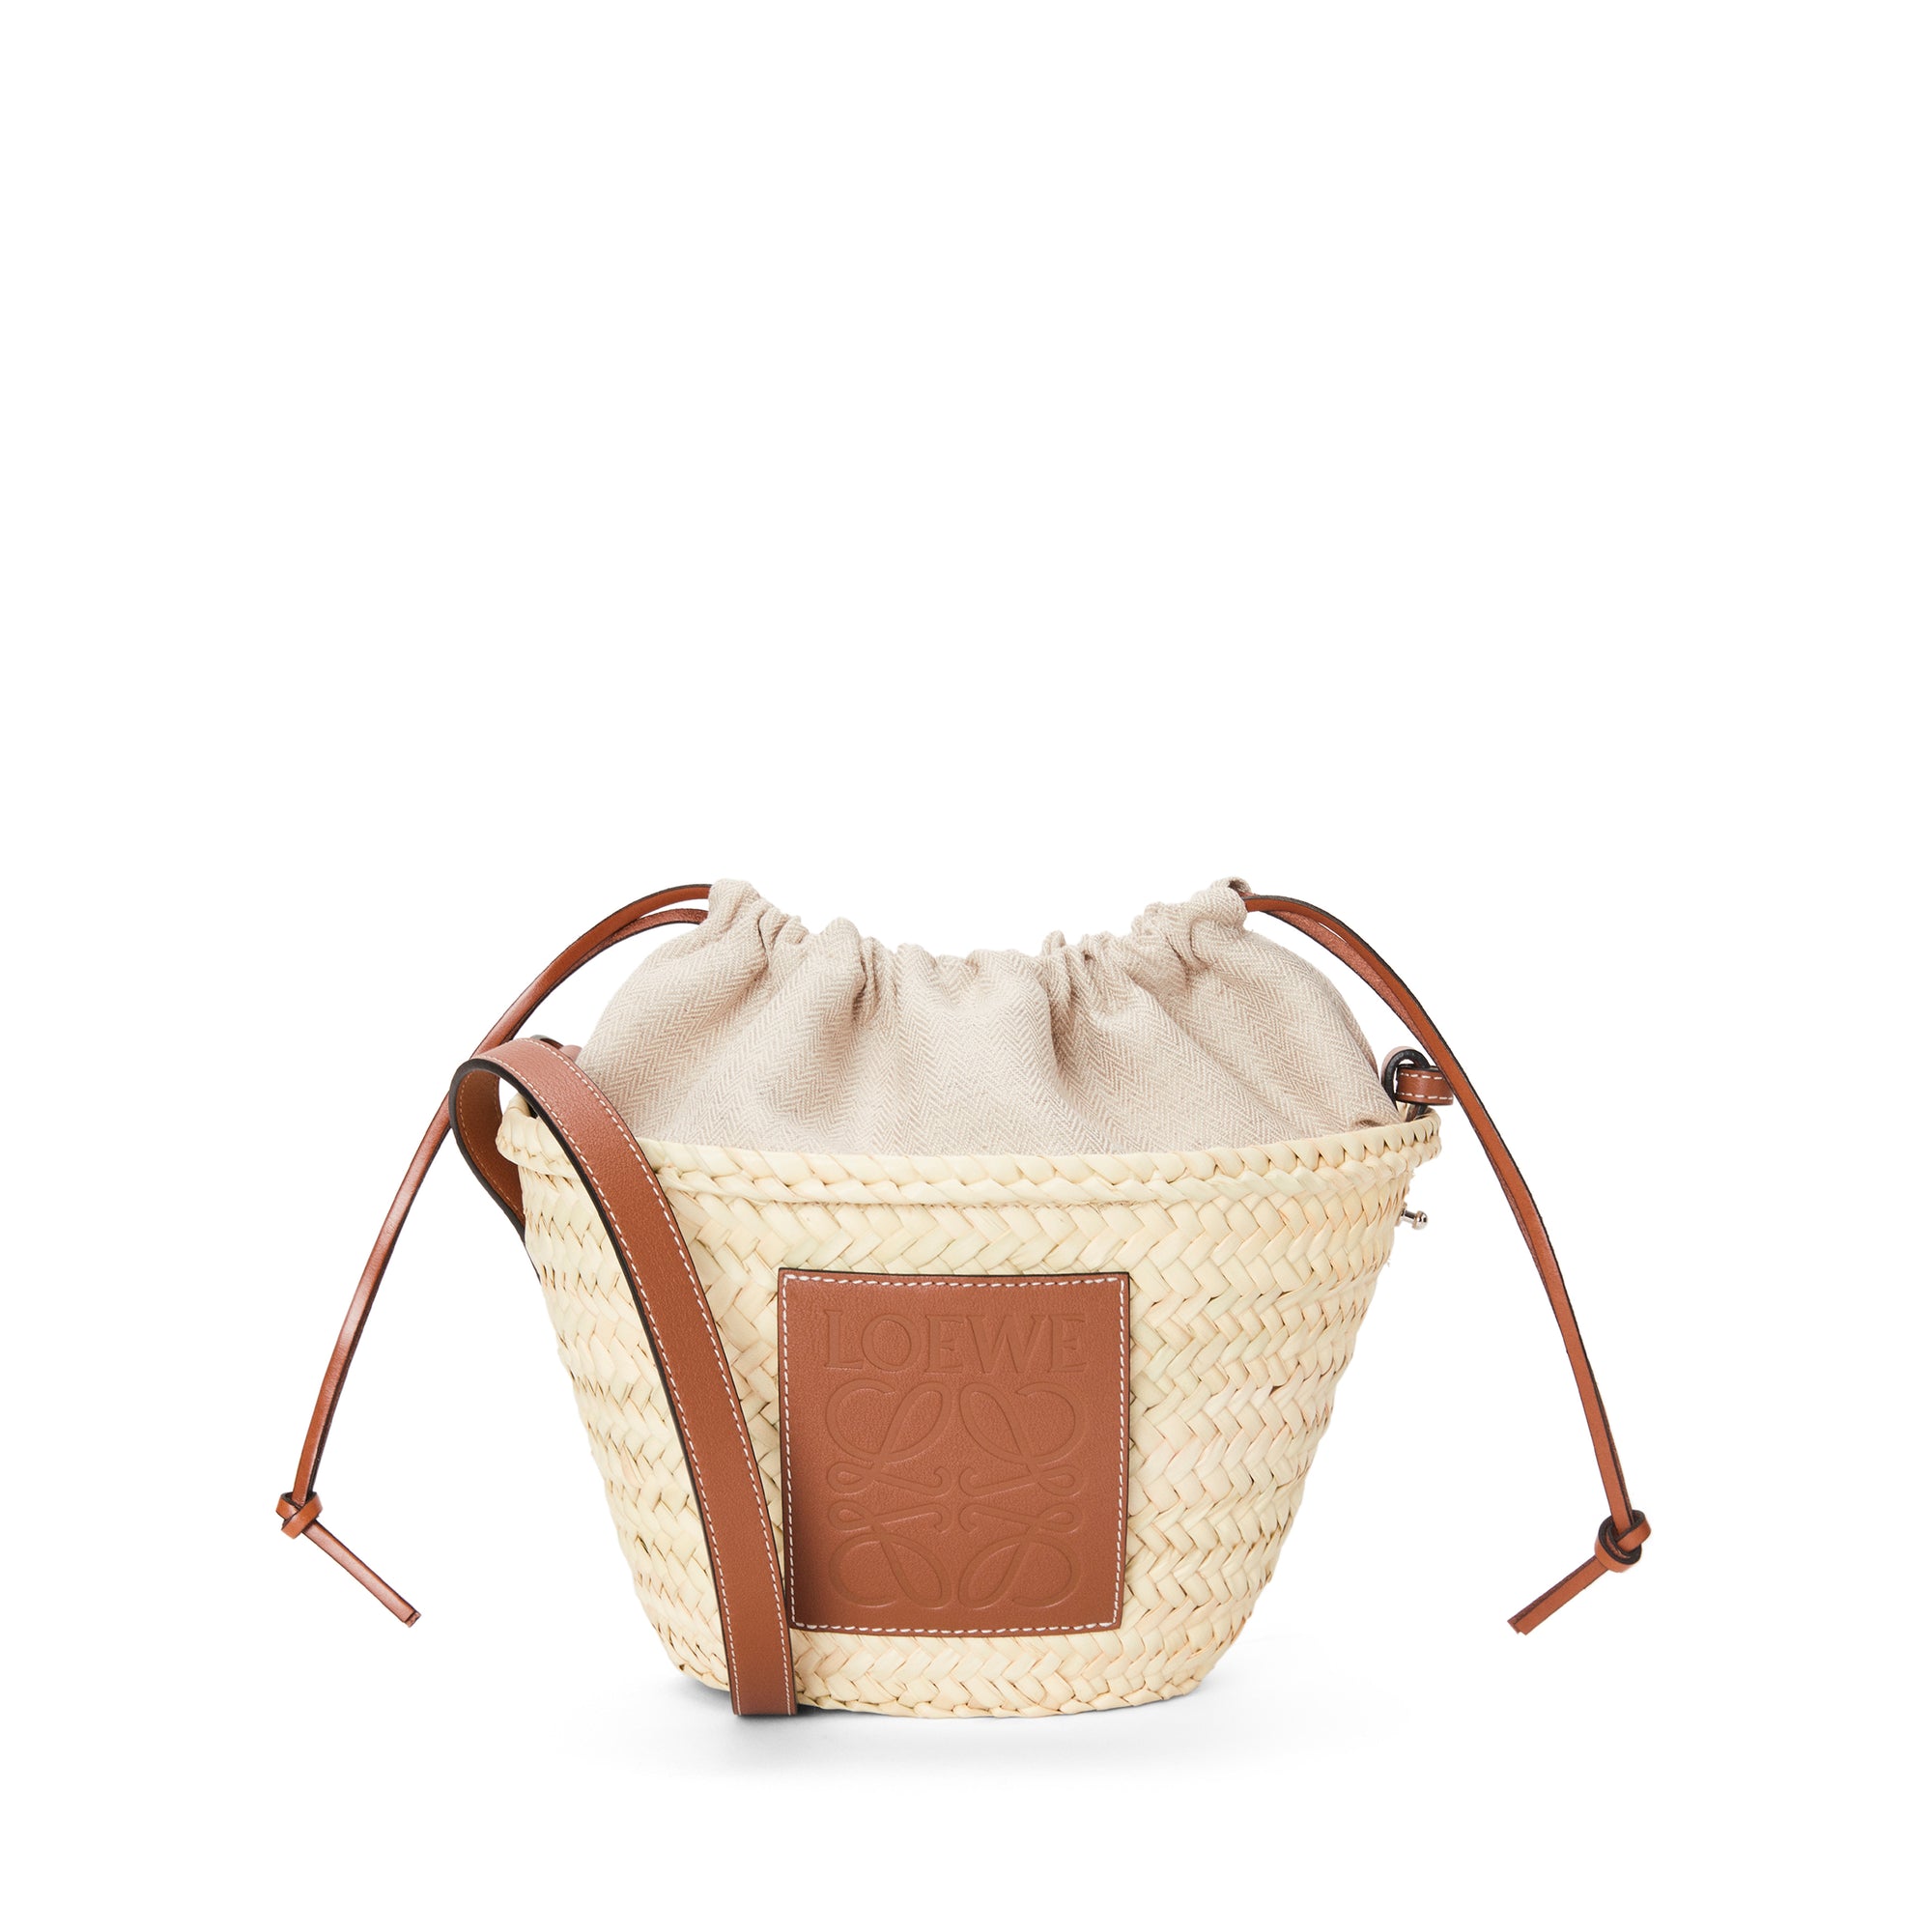 Loewe - Women’s Drawstring Bucket Bag - (Natural/Tan) view 1